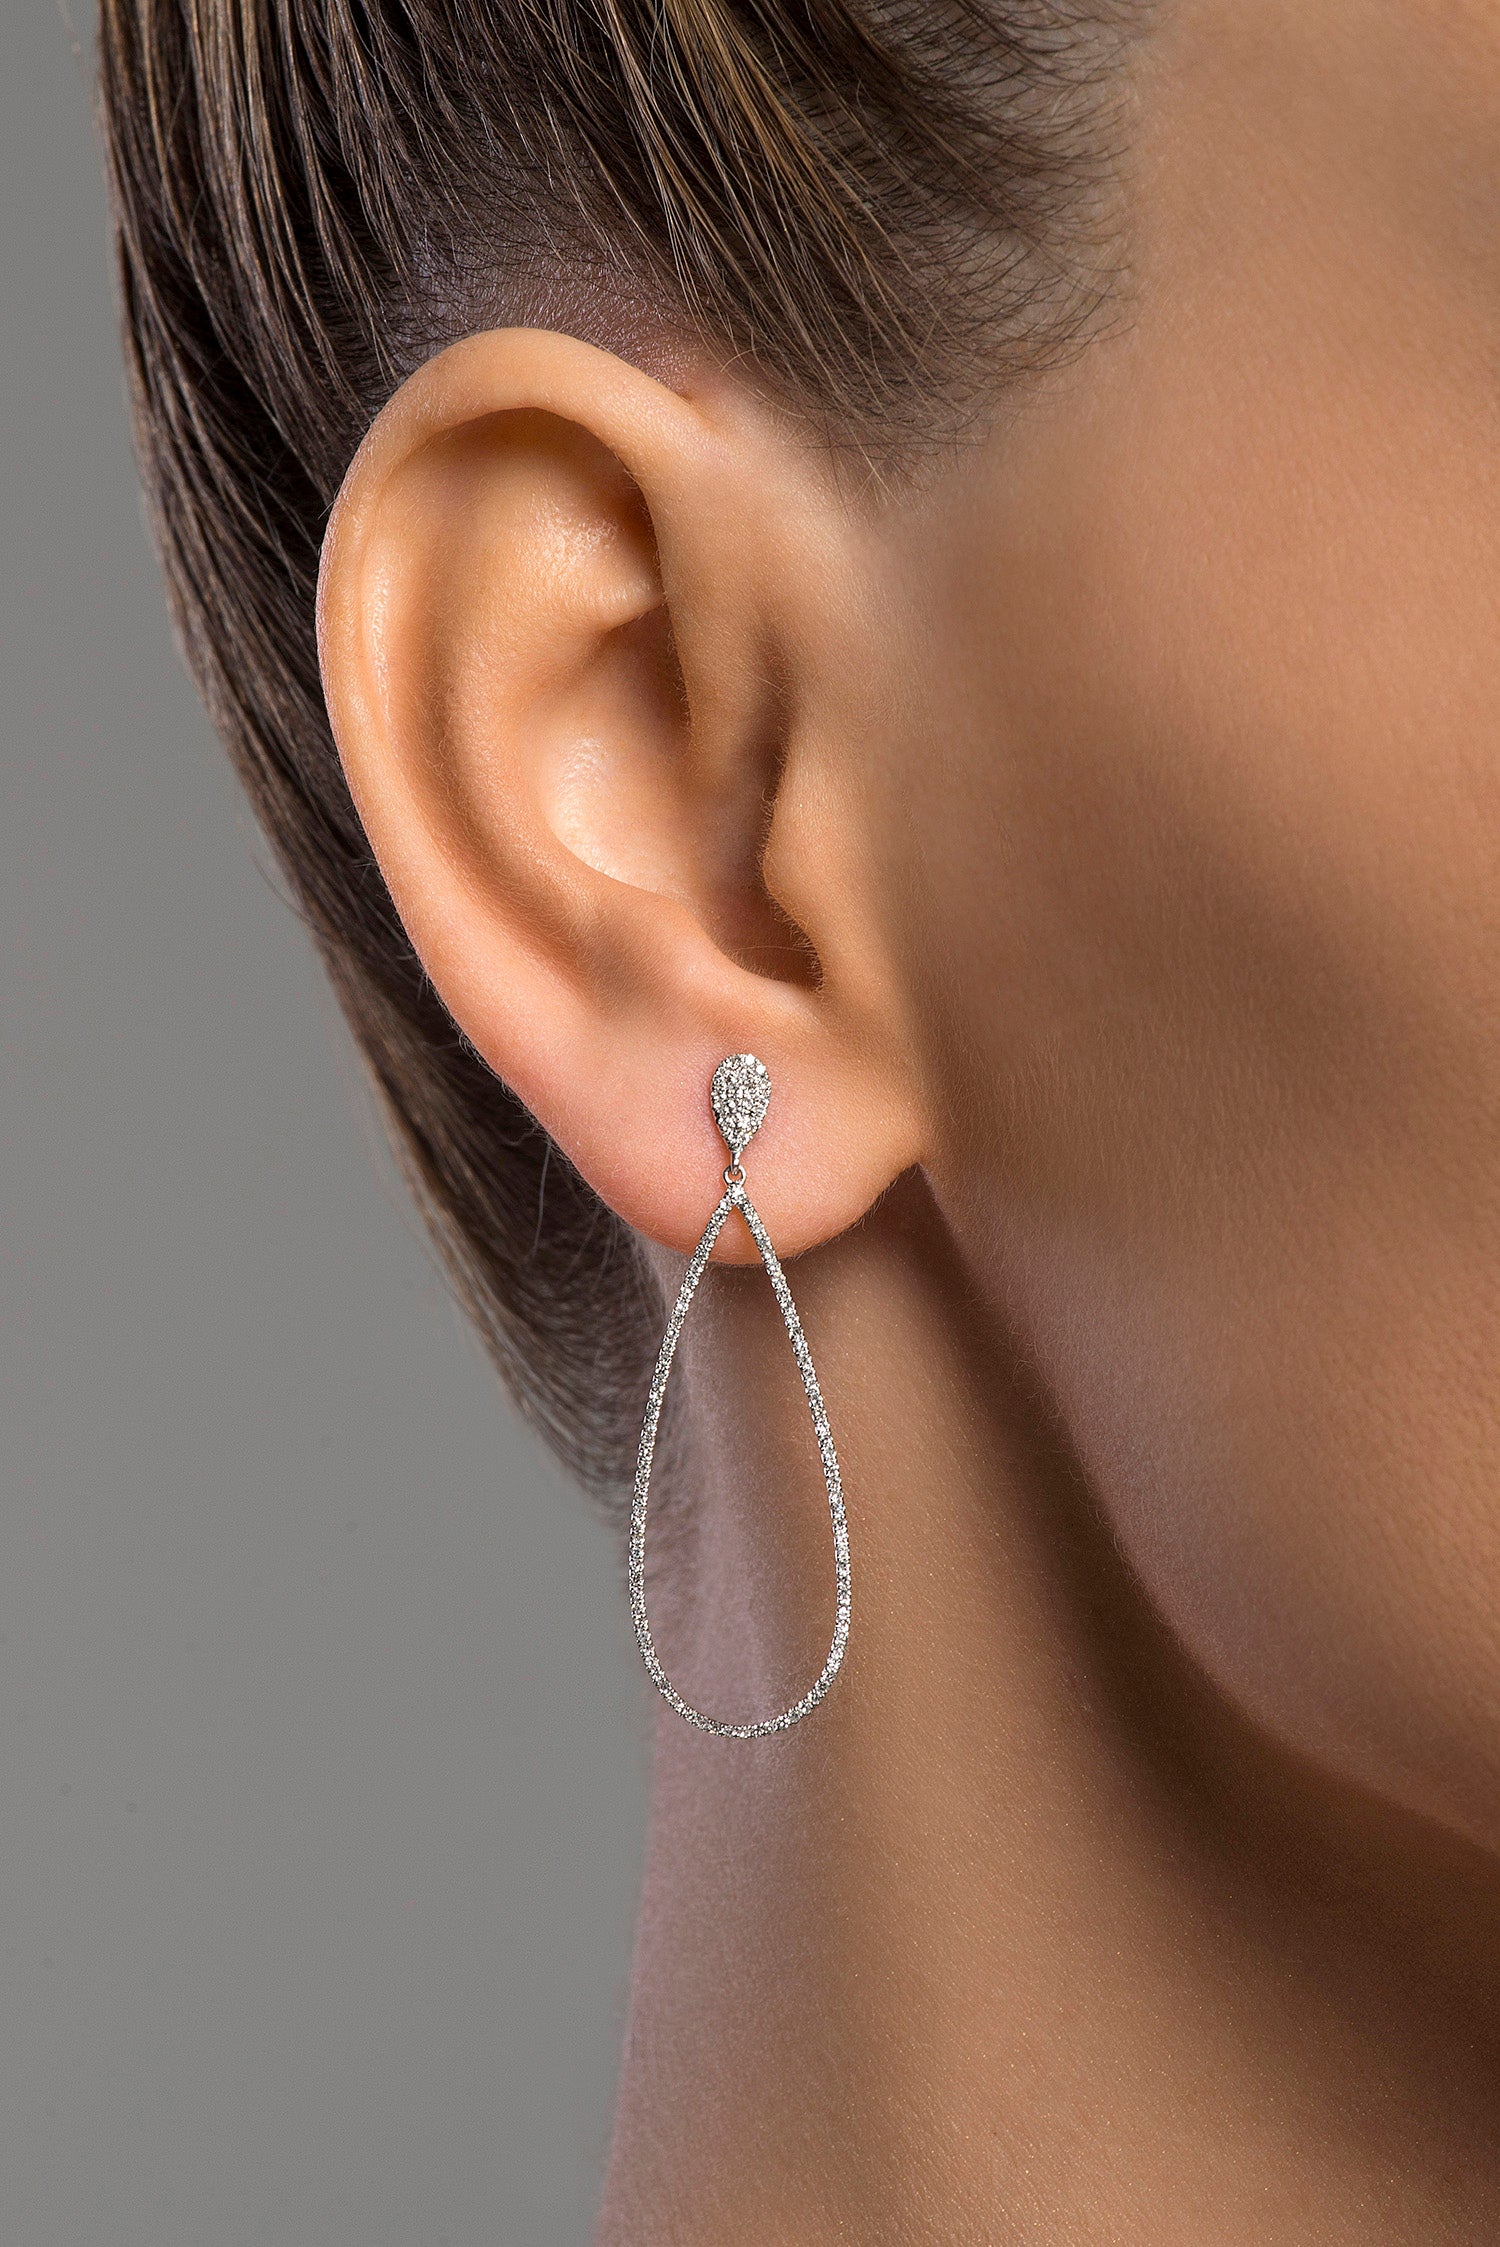 Oval Drop Earrings - Anatol Jewelry